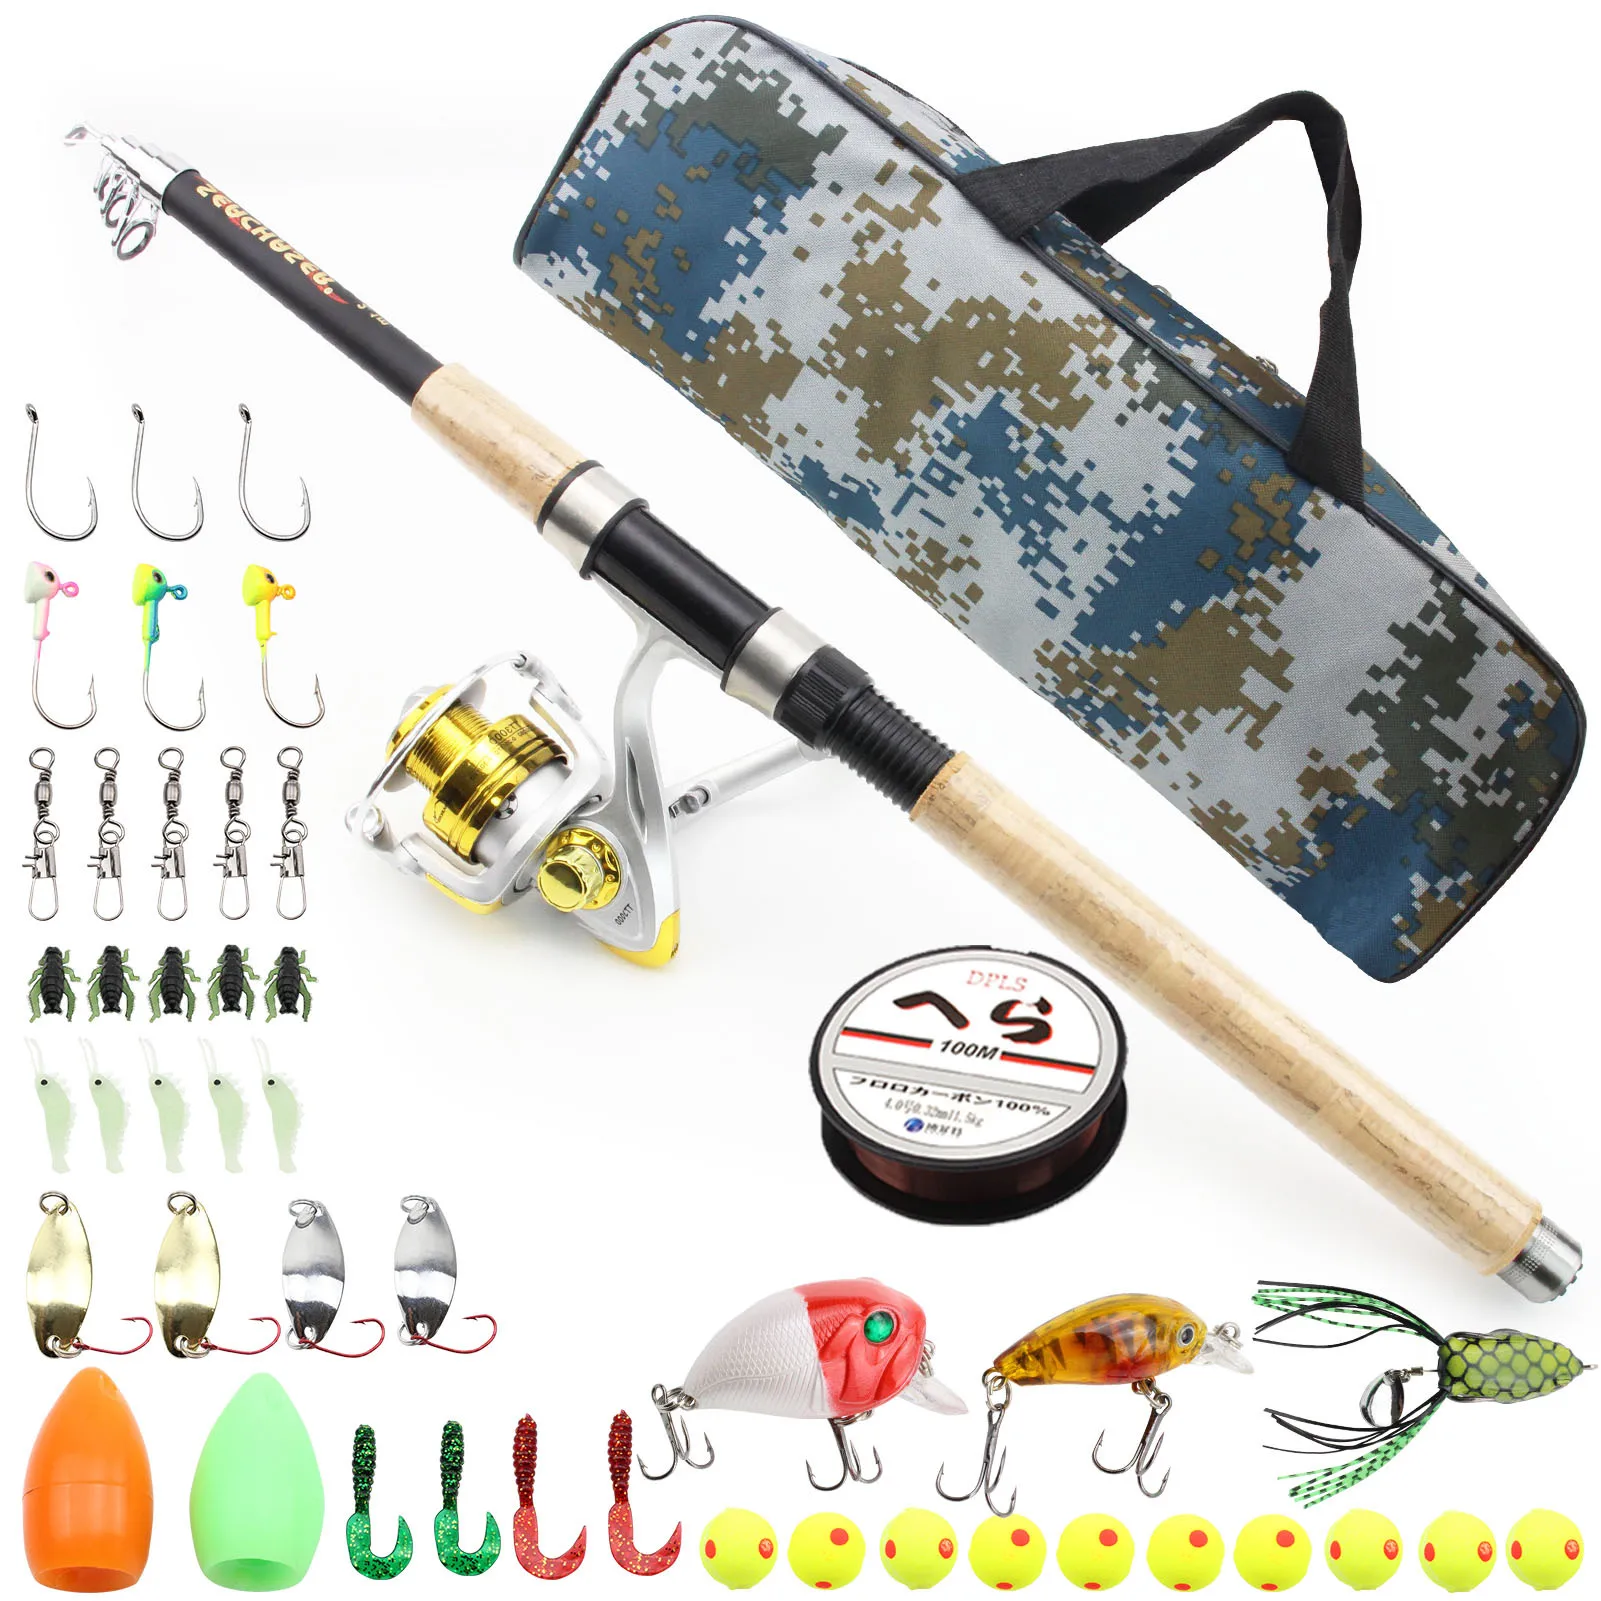 

2.1m Carbon Telescopic Fishing Rod Combo Spinning Reel Fishing Set Nylon Bag Travel Stick Carp Bass Pike Boat Rod Full Kit